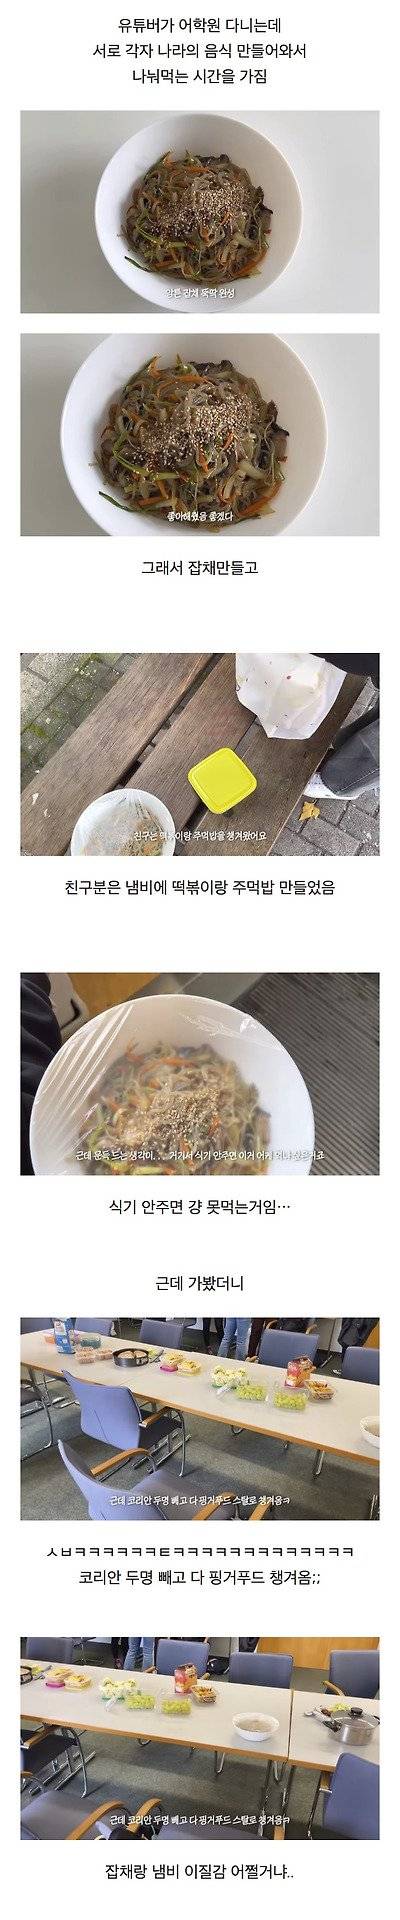 한국인들 각자 음식 싸오는 파티 참가했을 때 일어나는 참사 .jpg | 인스티즈